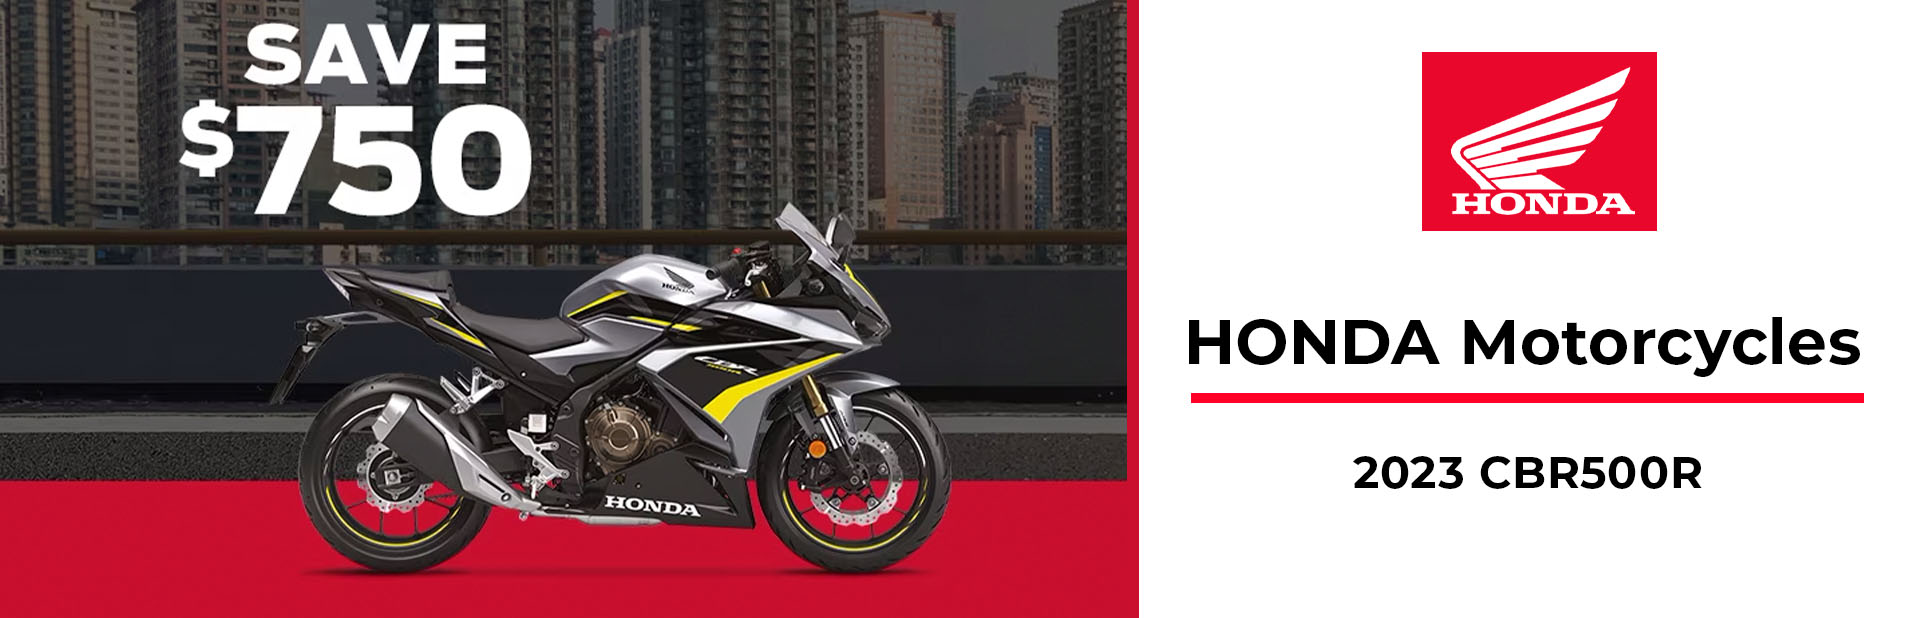 Honda: 2023 CBR500R Offer